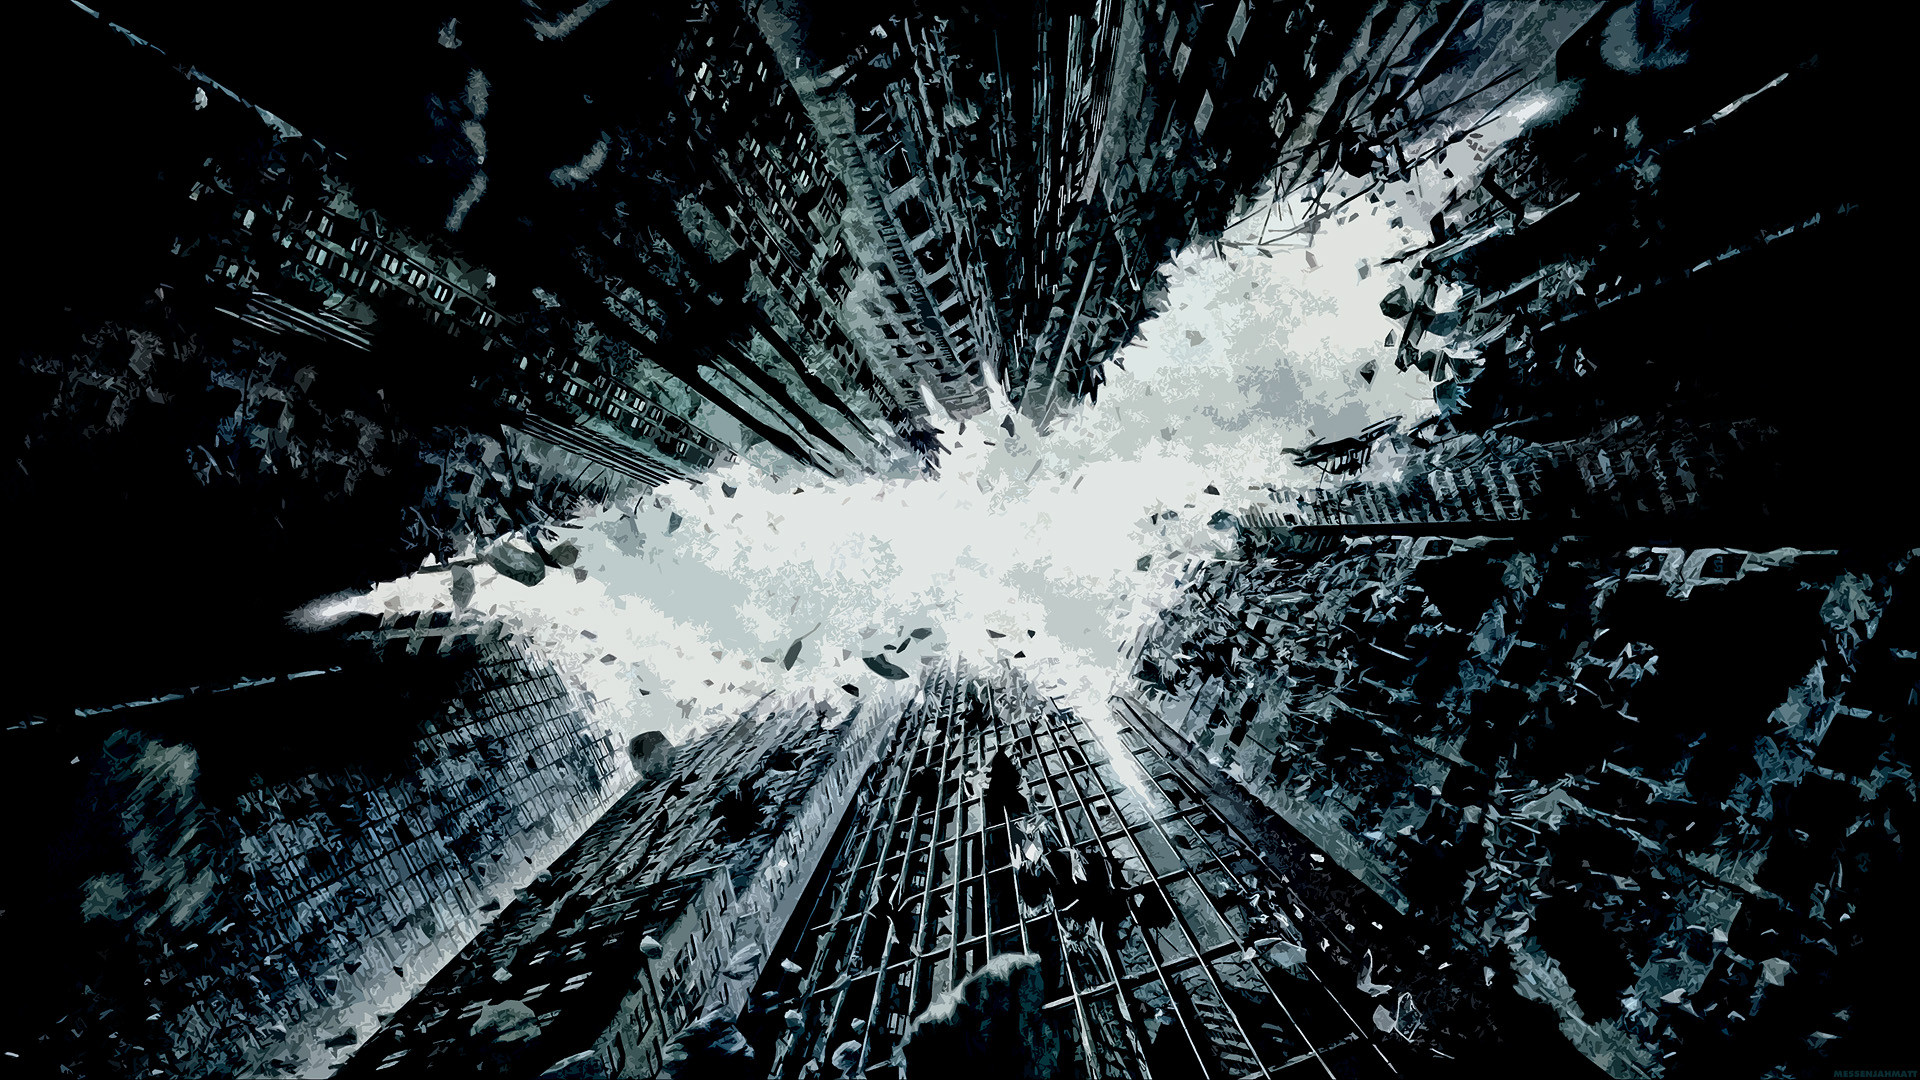 Dark Knight Rises Teaser Poster - HD Wallpaper 